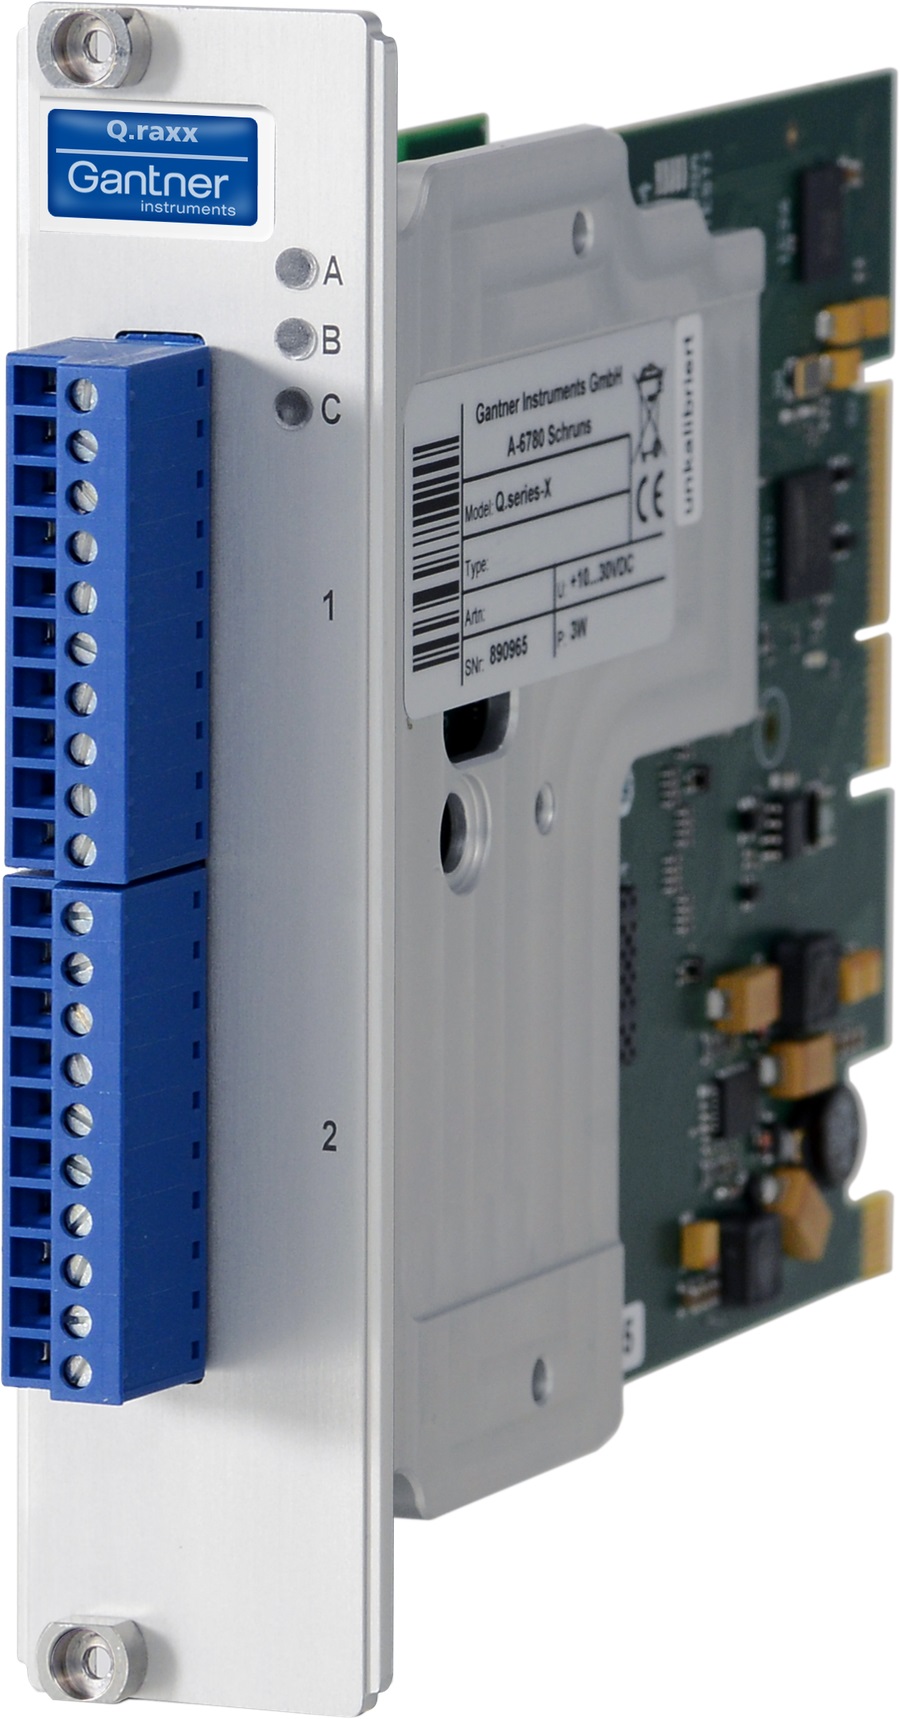 Q.raxx XL A106 Datenerfassungsmodul 2-Kanal-Trägerfrequenzmodul für Messbrücken